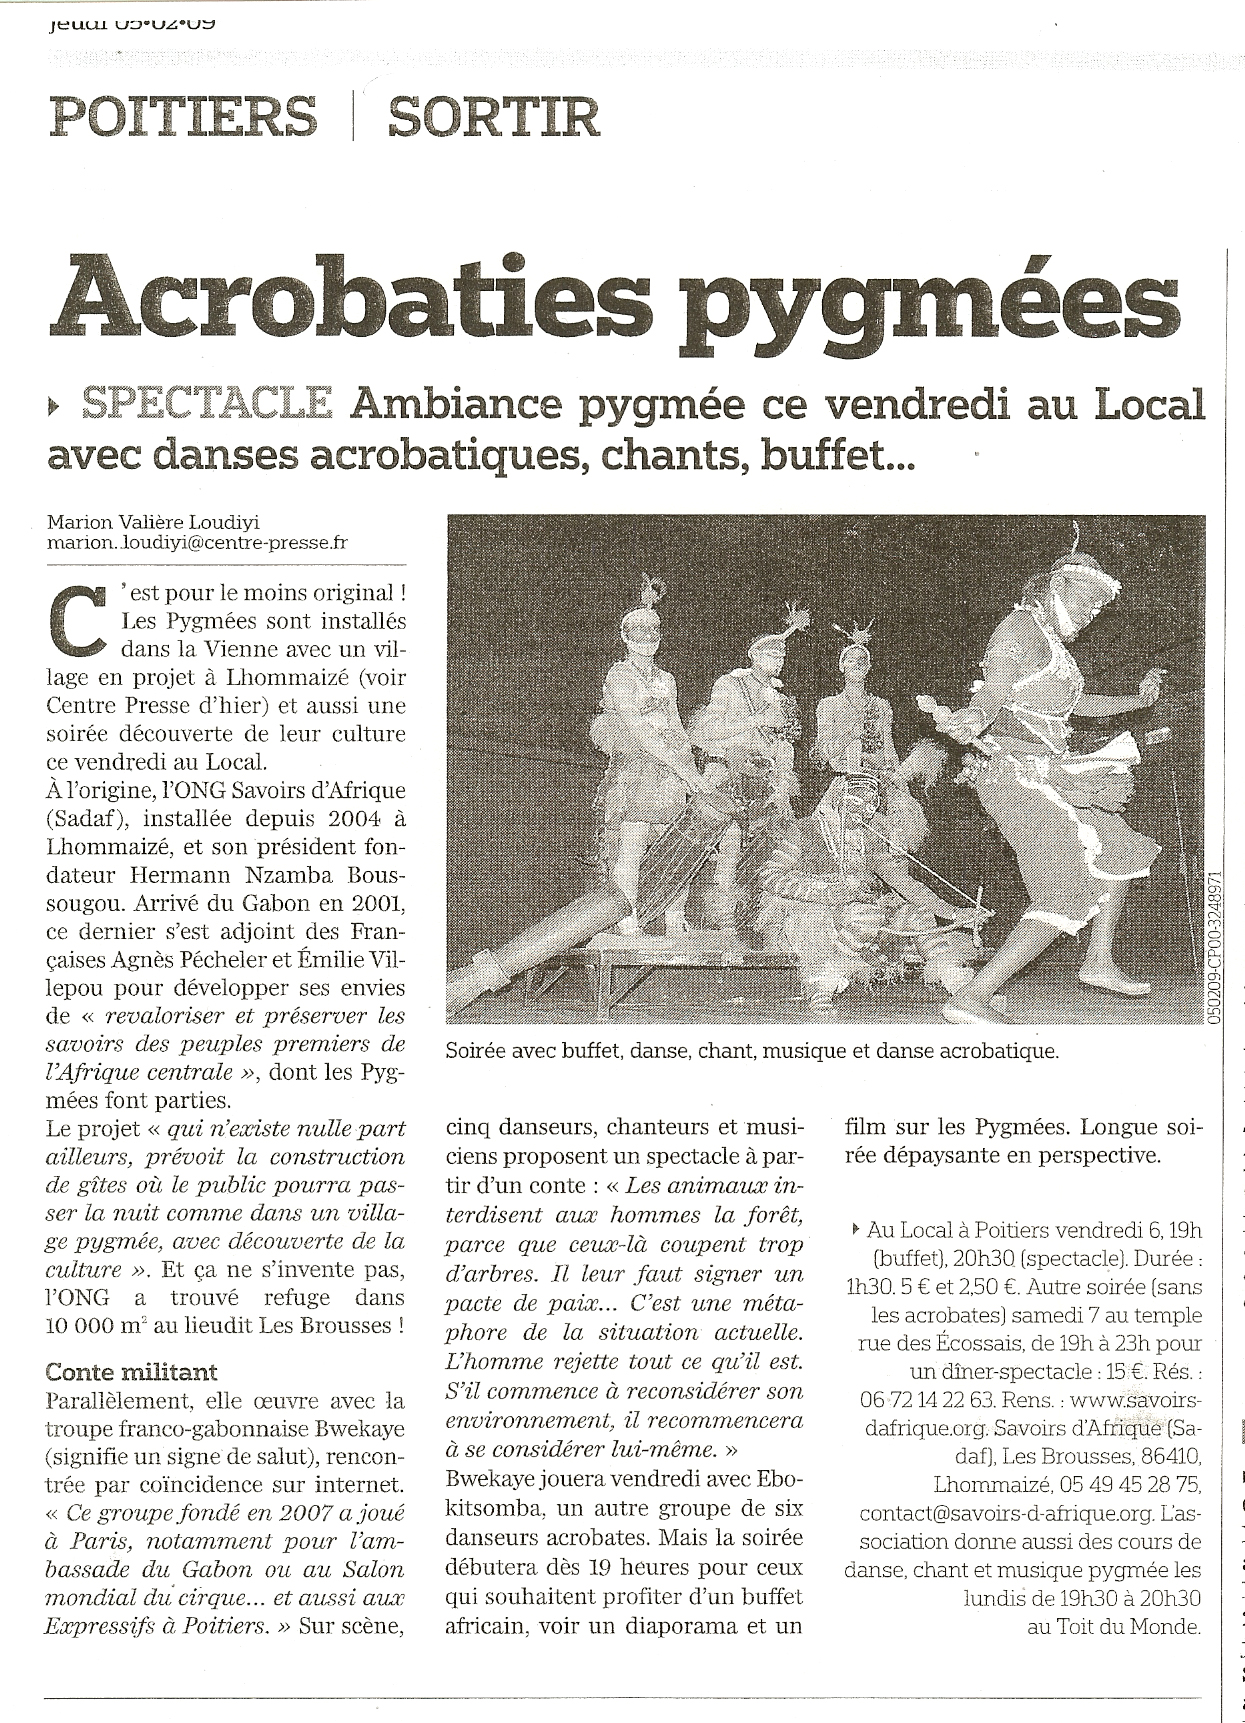 acrobaties_pygmees.jpg